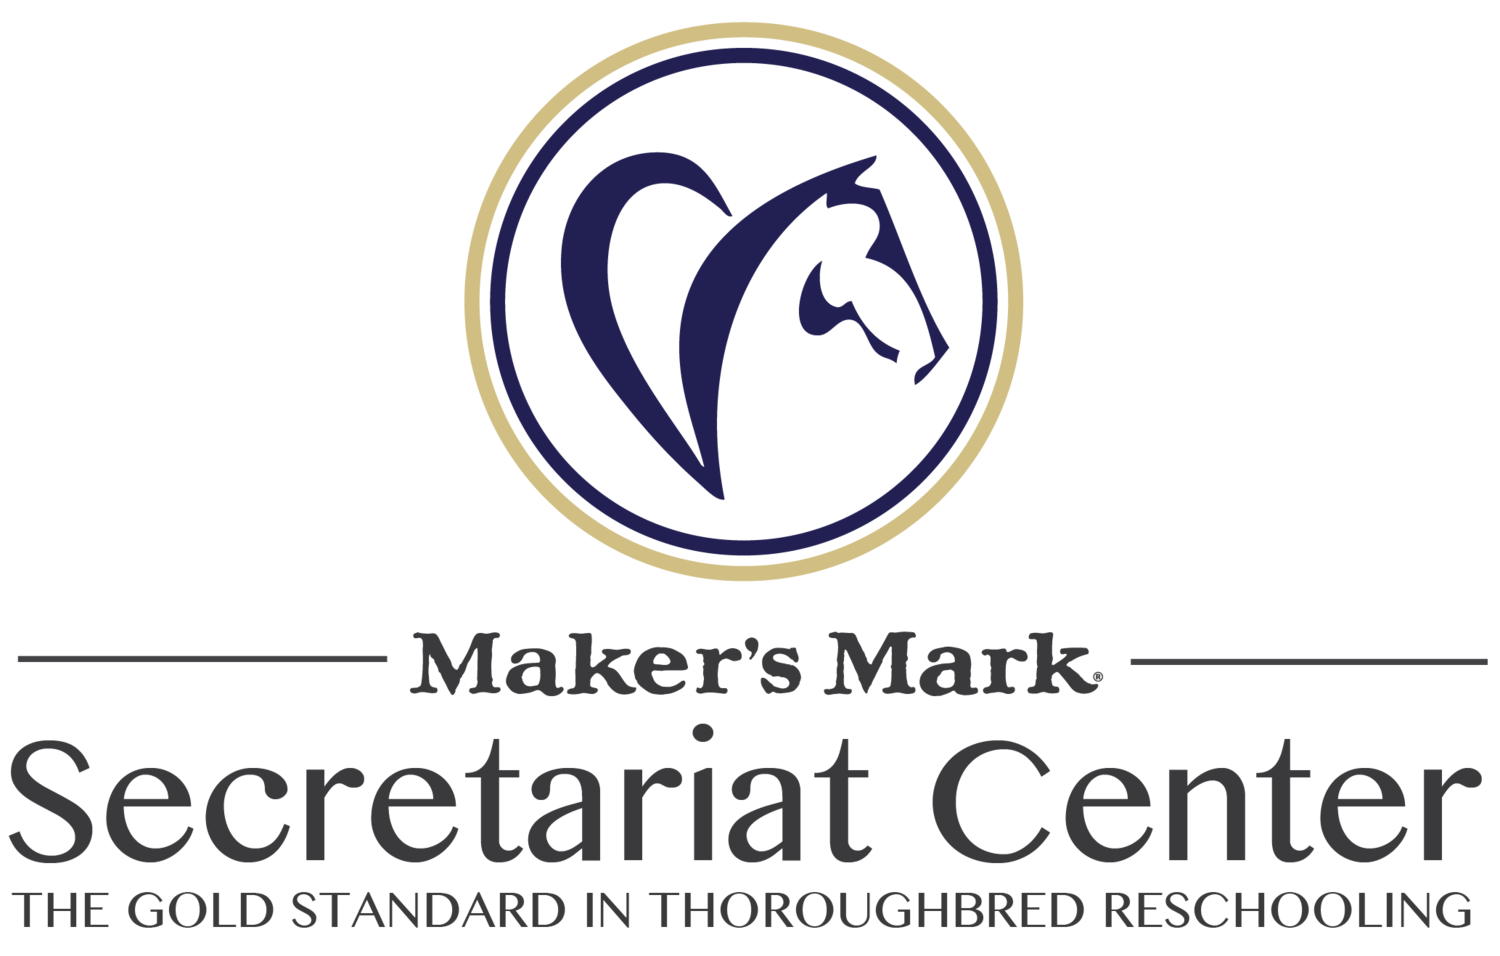 Maker's Mark Secretariat Center.